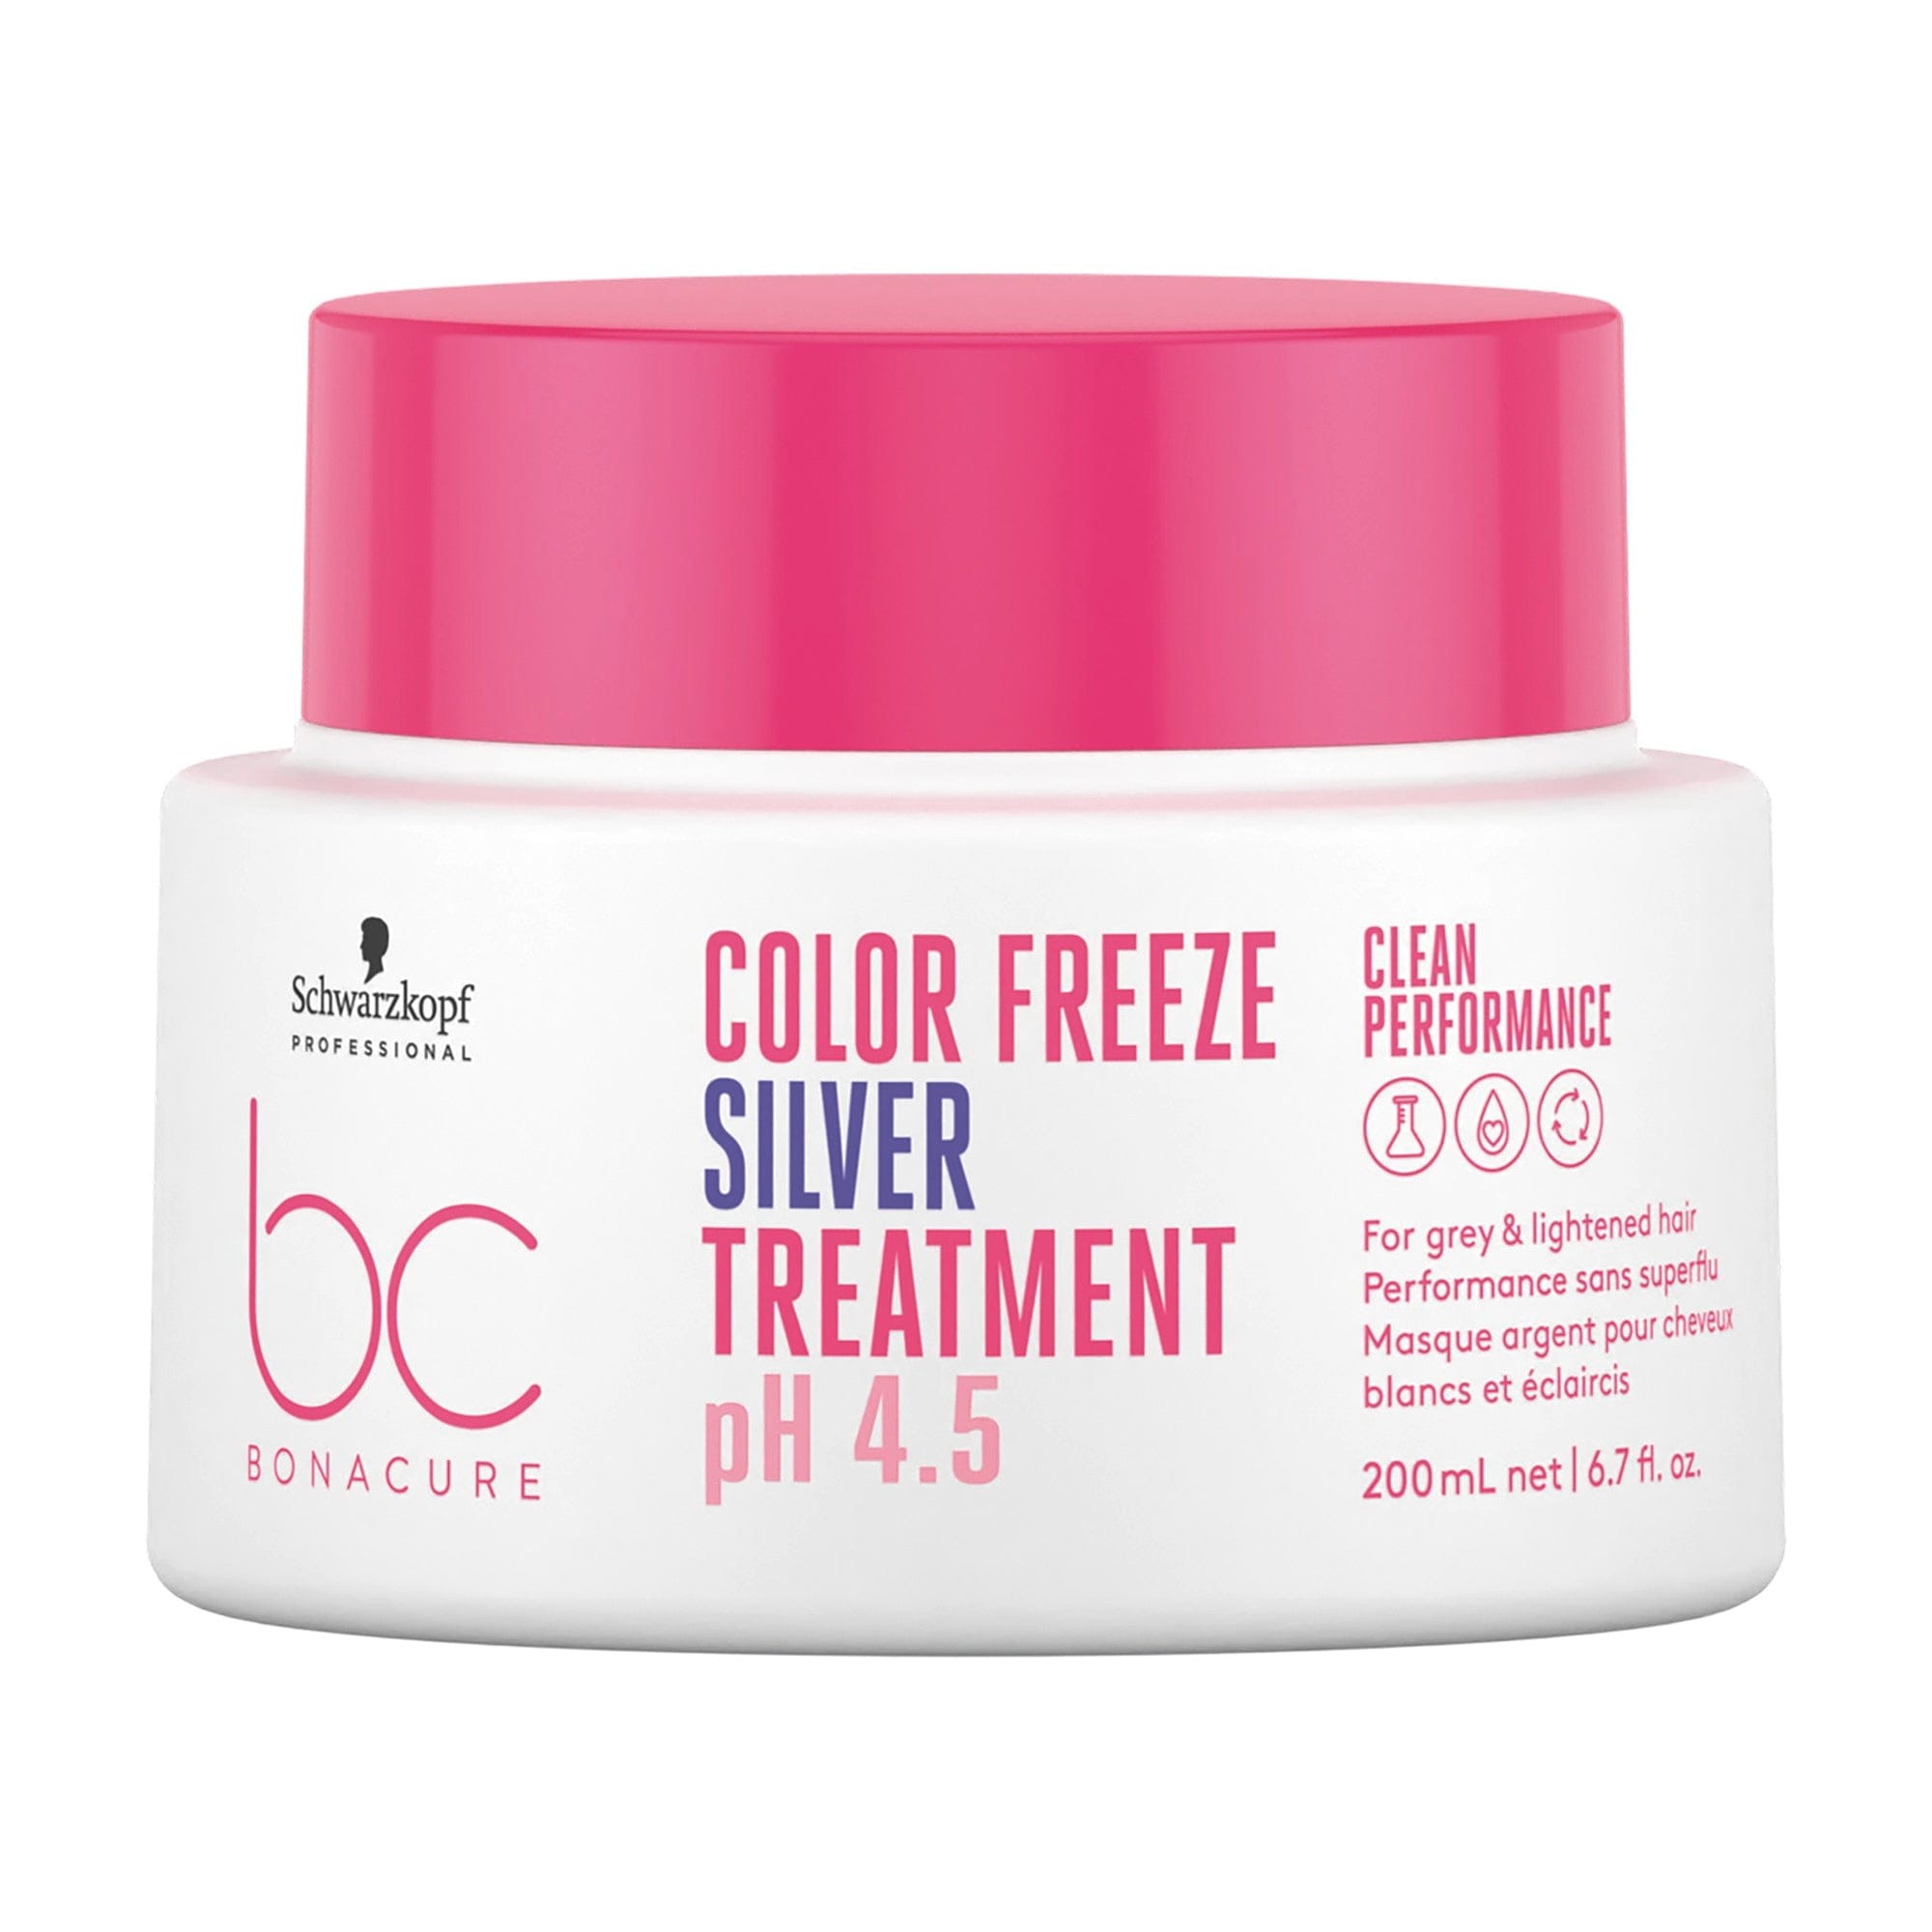 BC Bonacure NUEVO Bonacure Color Freeze Tratamiento Especial Canas 200ml Roberta Beauty Club